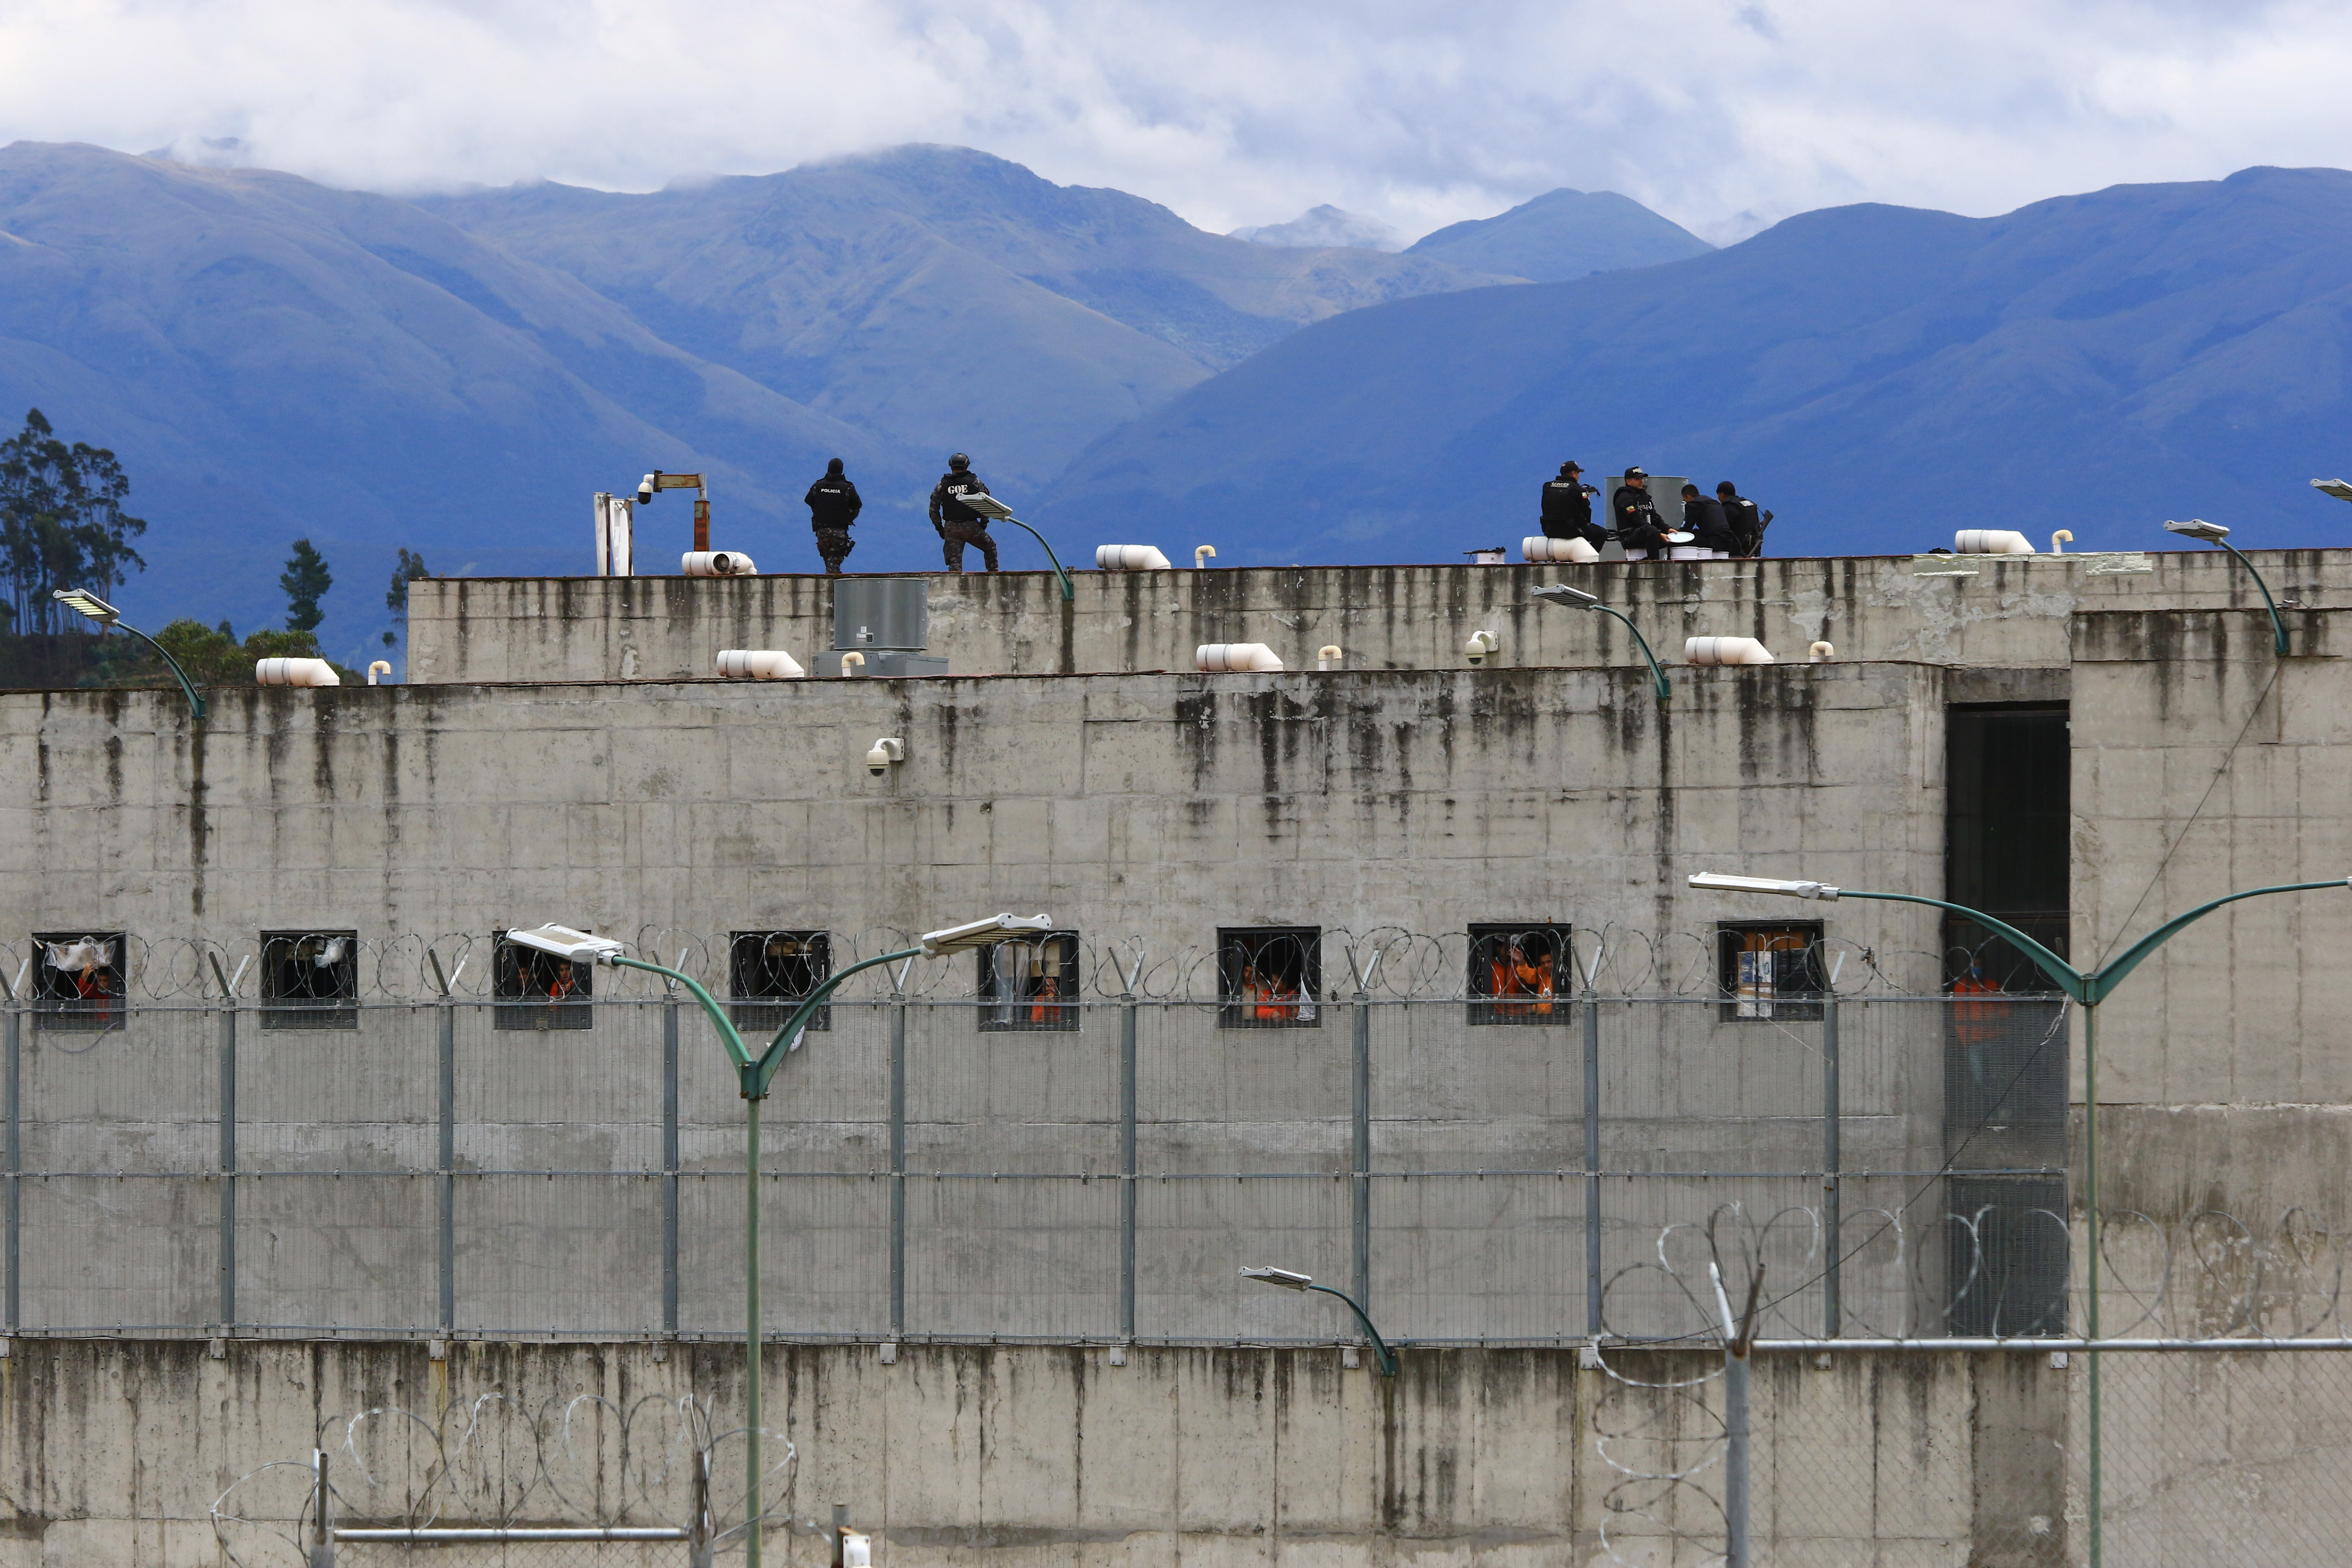 Ecuador activa los protocolos de seguridad por “alteraciones” al orden en una cárcel